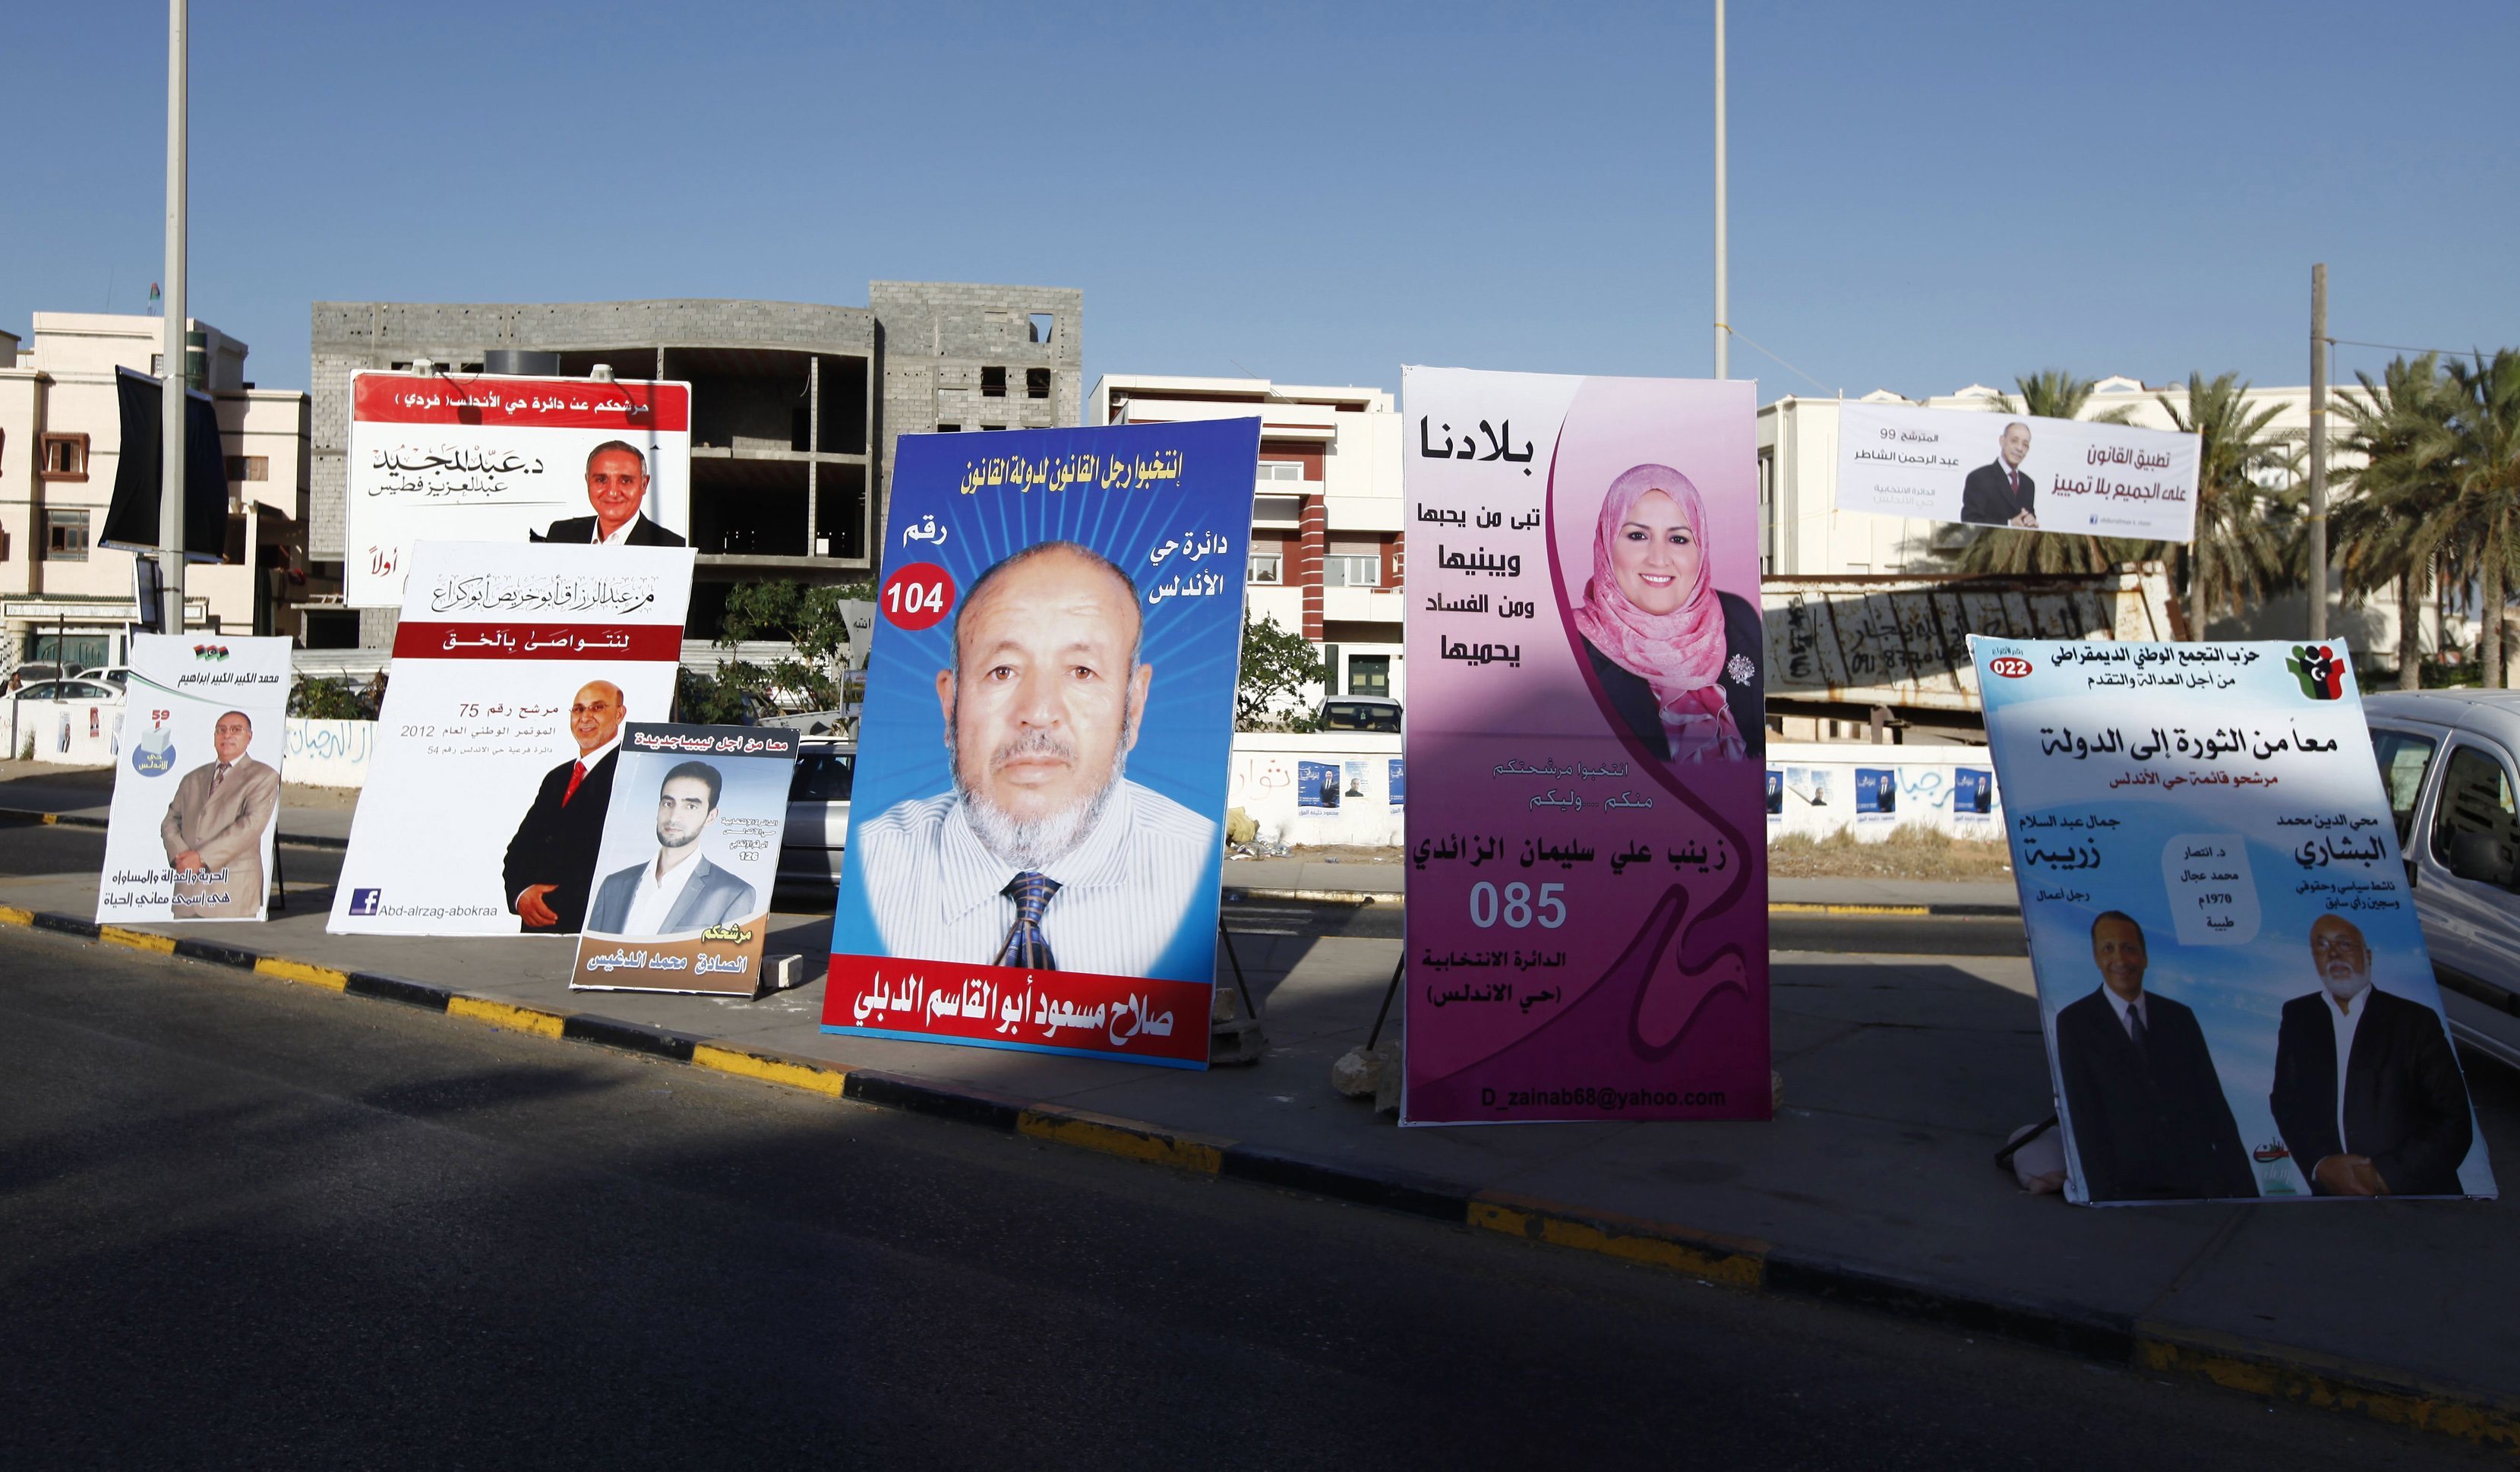 Λιβύη: “Μπούκαραν” με όπλα κι έκαψαν εκλογικό υλικό